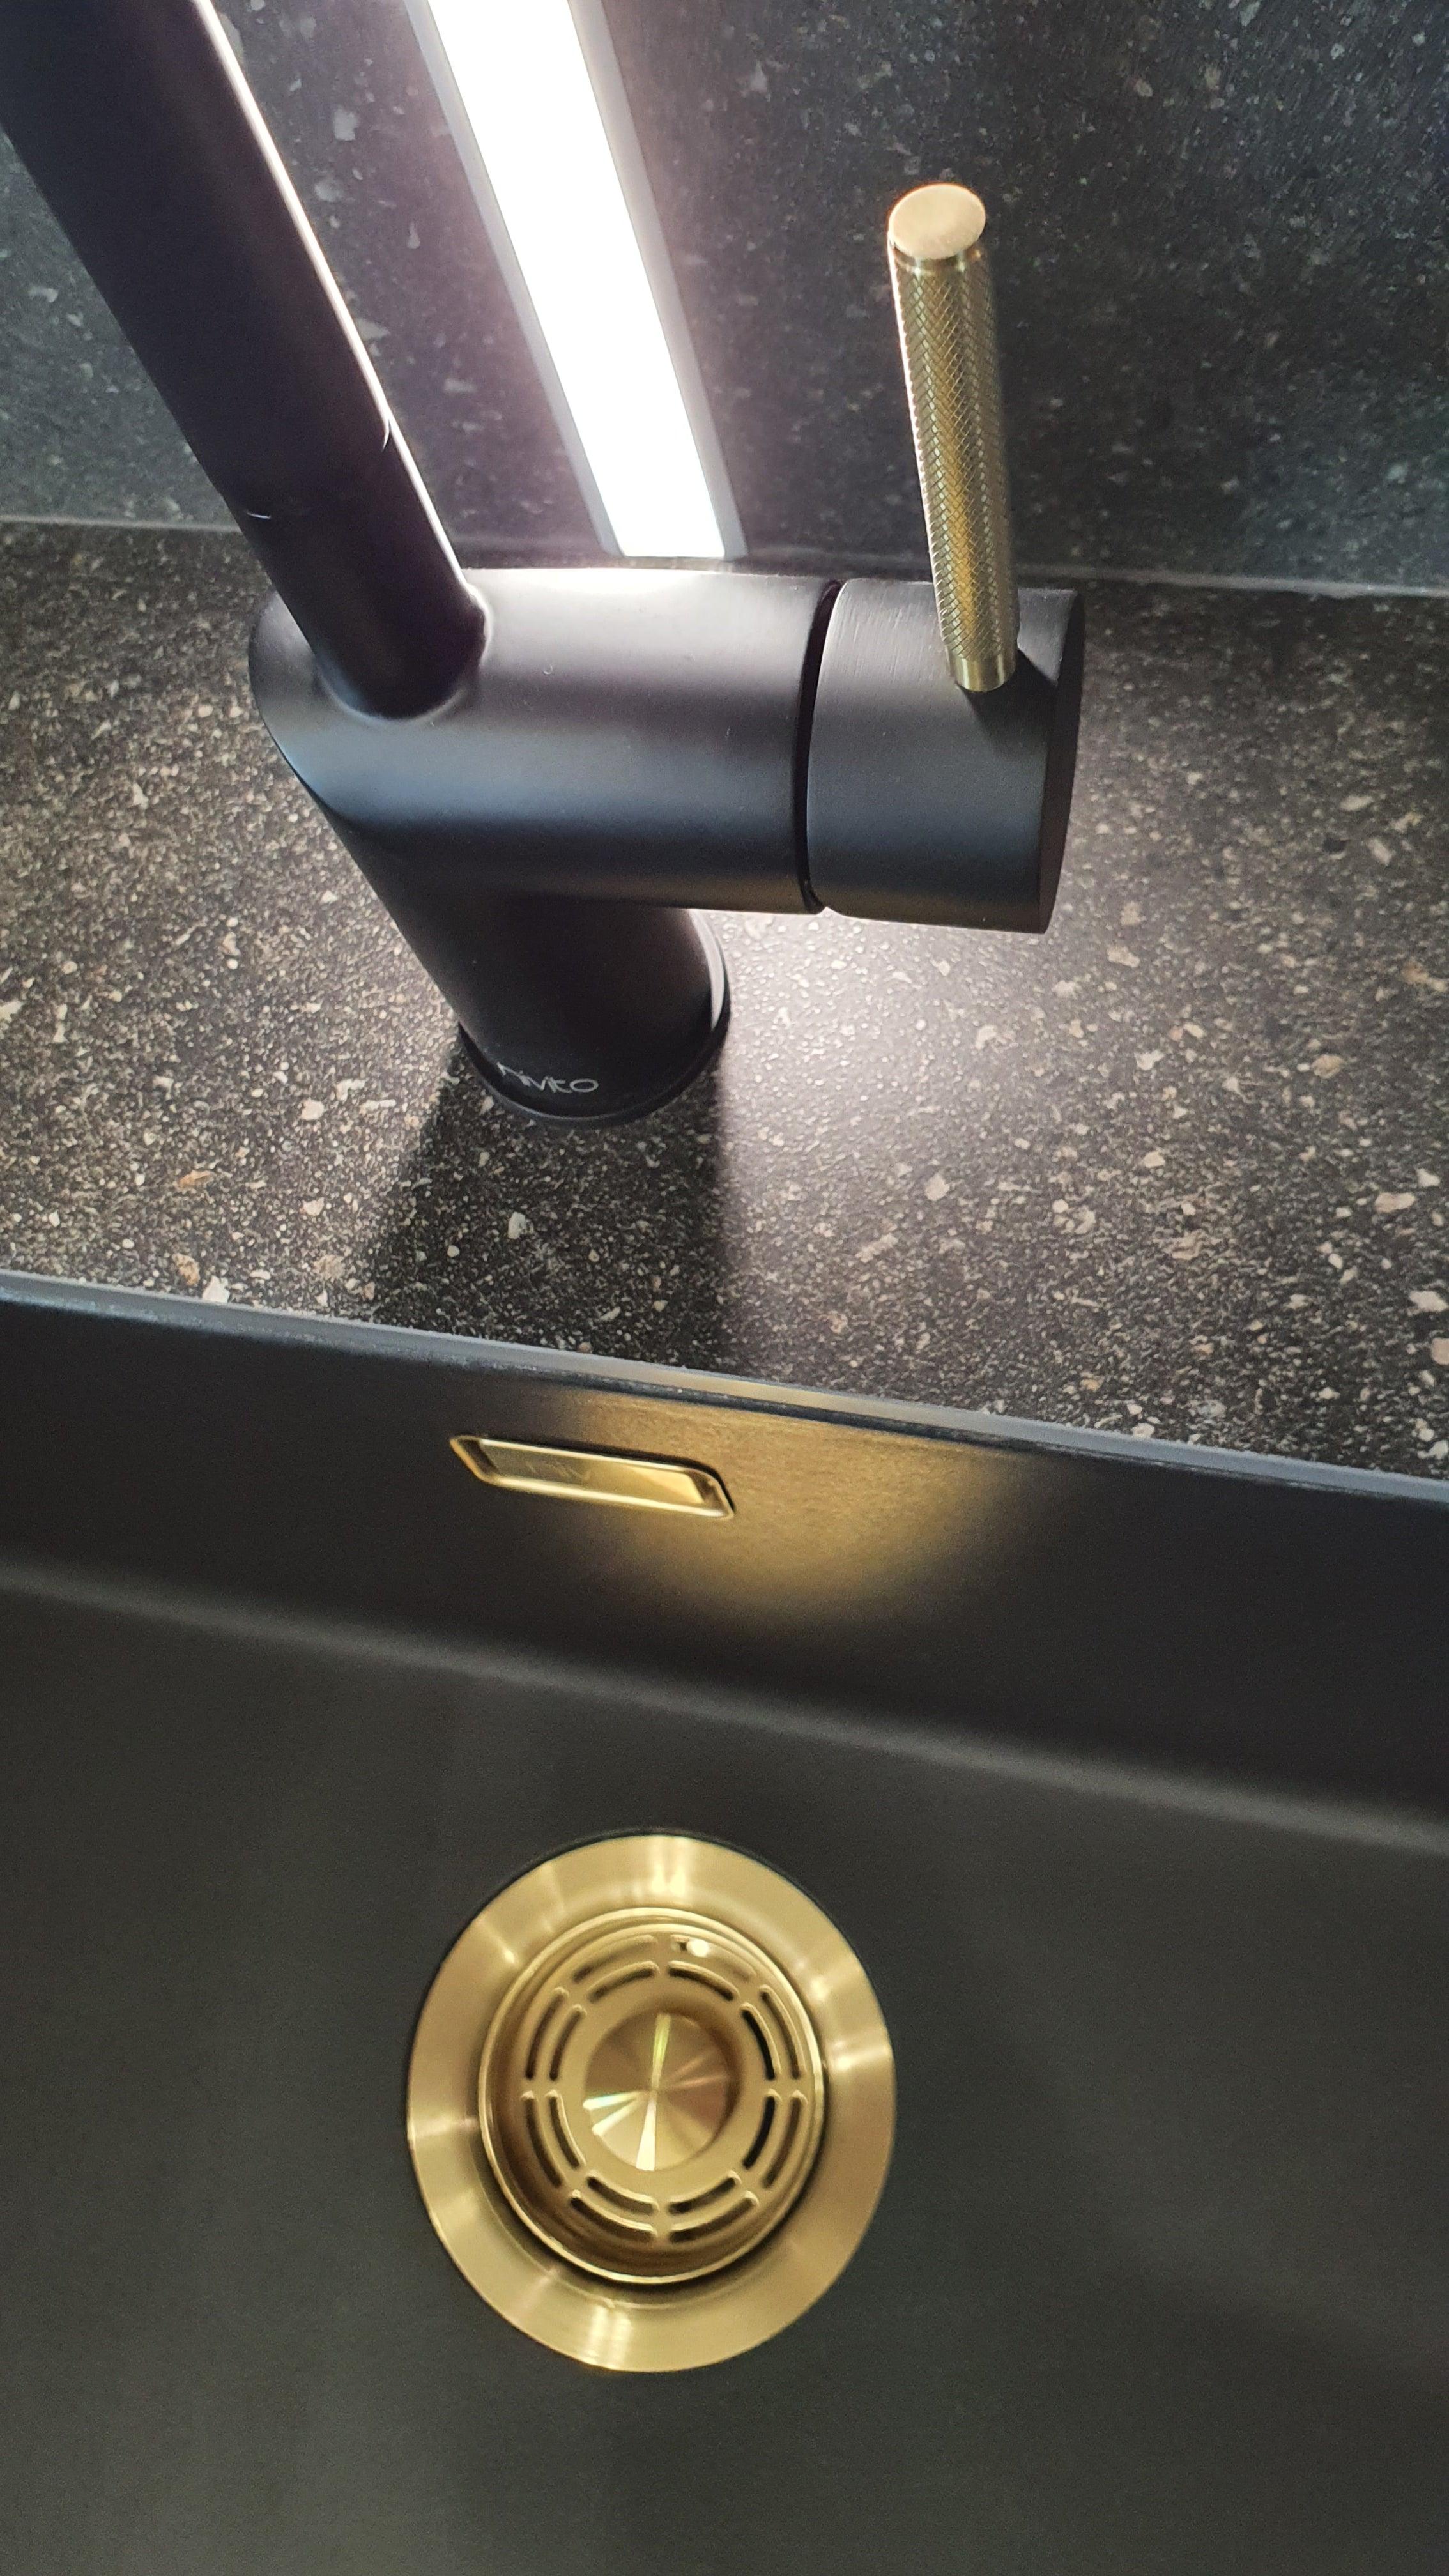 Nivito RH-340-IN-BISTRO Black & GOLD, kitchen mixer tap - Olif